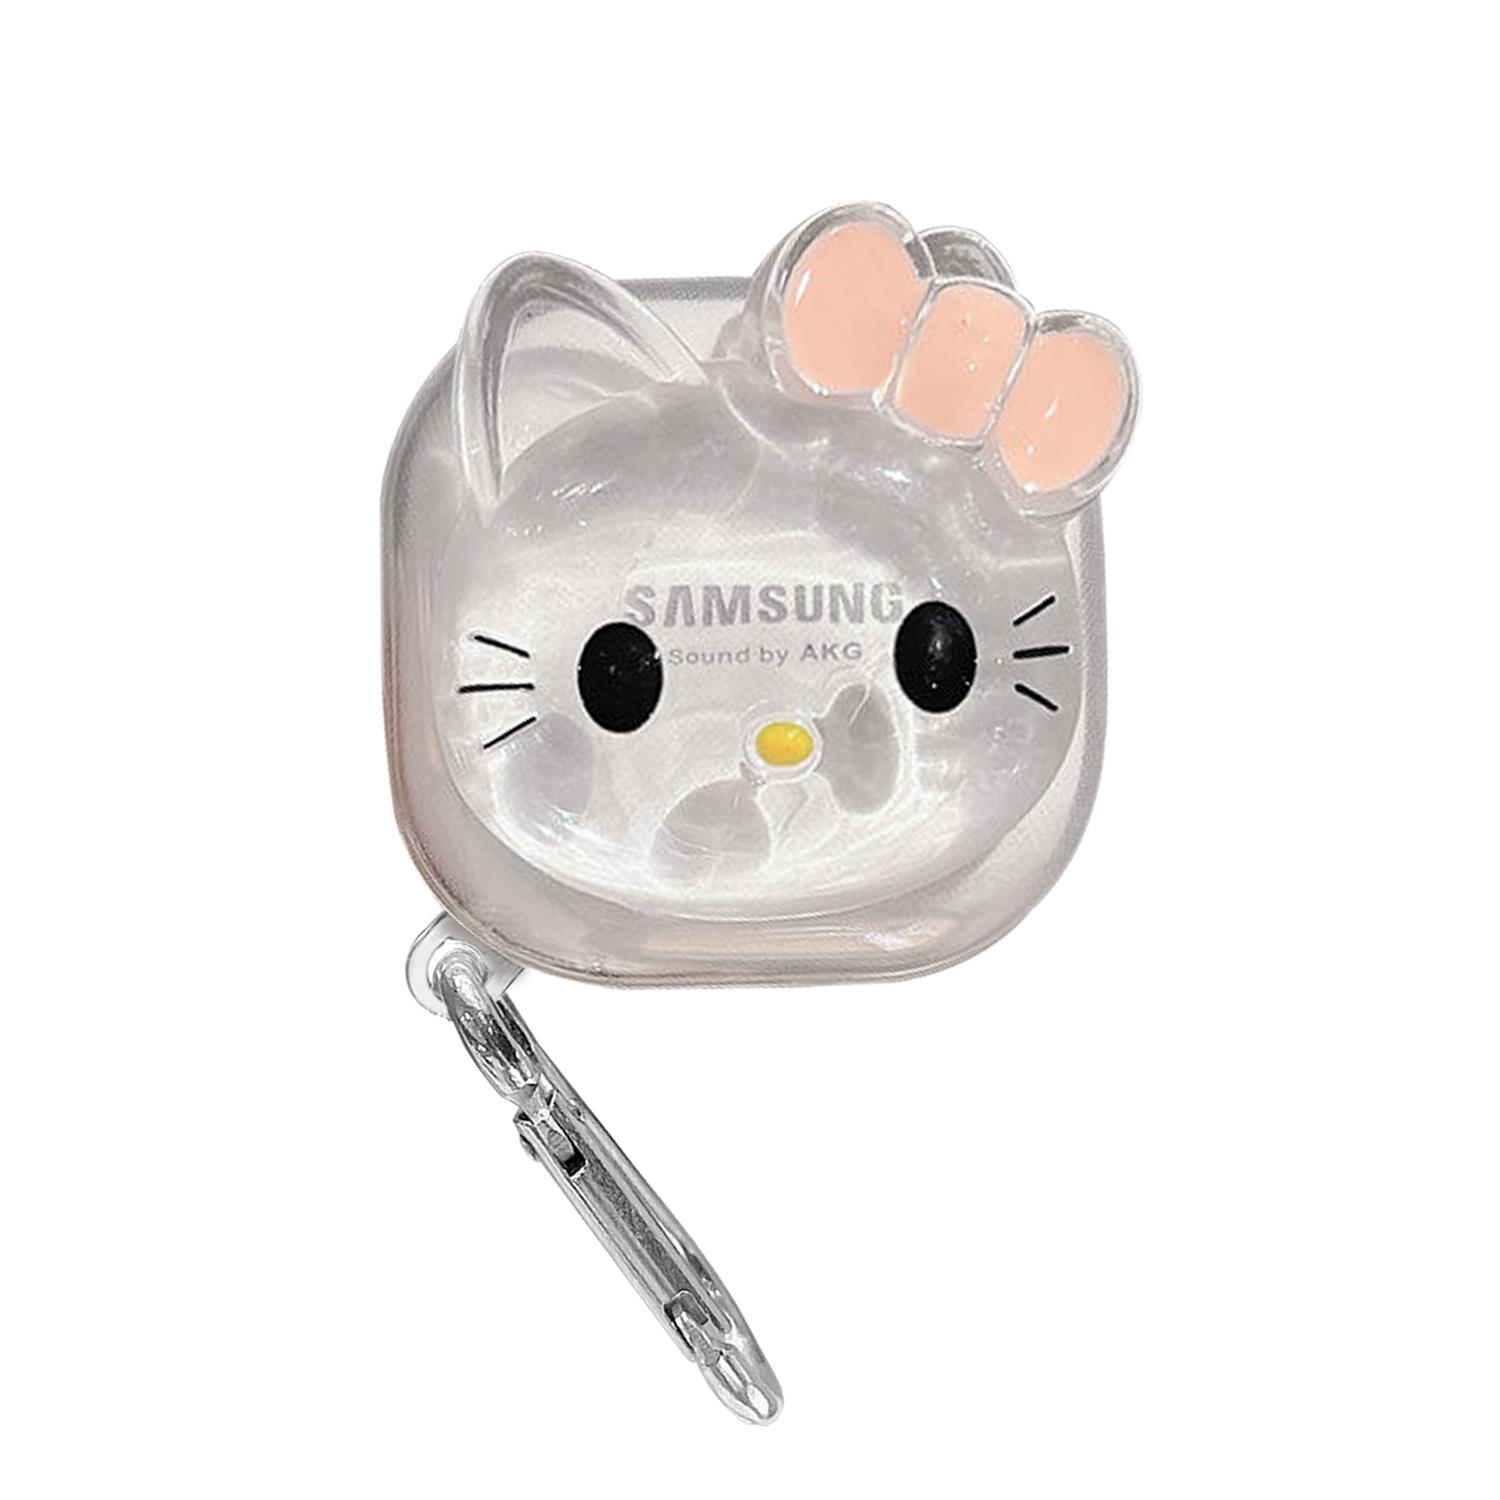 Microsonic Samsung Galaxy Buds 2 Kılıf Cartoon Figürlü Silikon Crtn-Fgr-Hl-Kty-Sff